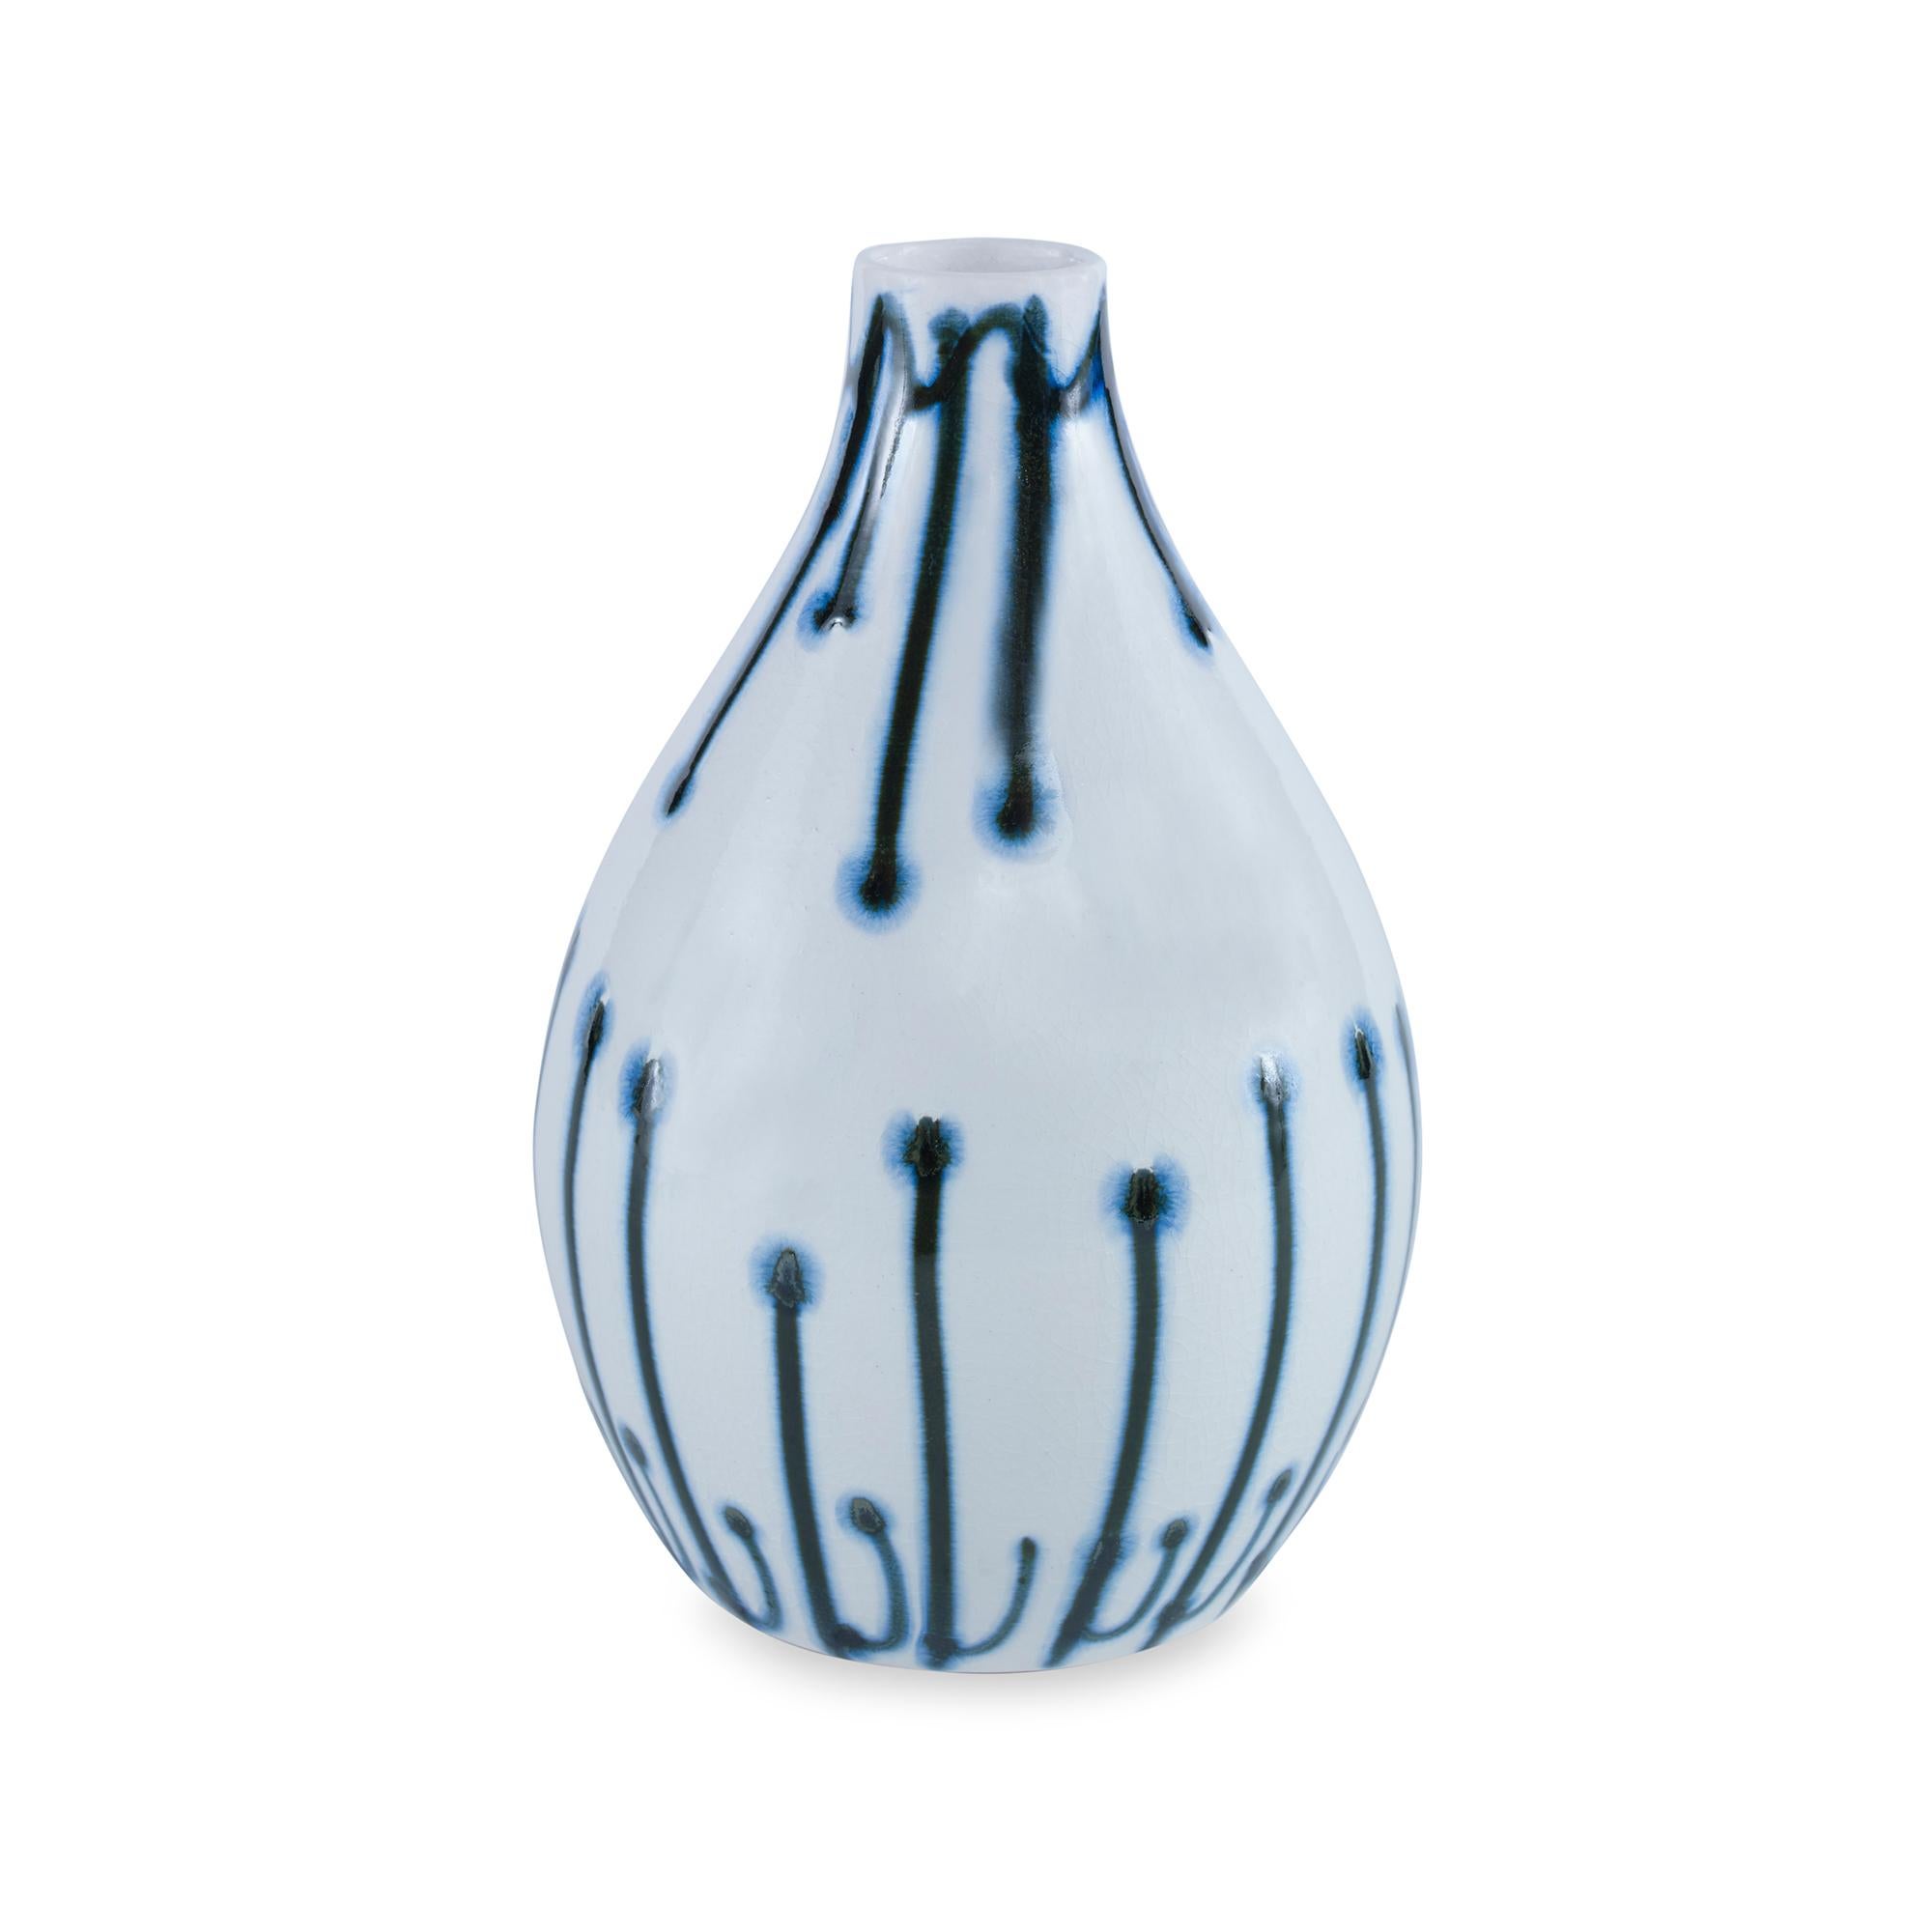 Eine handbemalte Vase aus Steingut mit einer reaktiven blauen Glasur. Da es sich um ein handgefertigtes Produkt handelt, sind Abweichungen von Stück zu Stück zu erwarten.
 